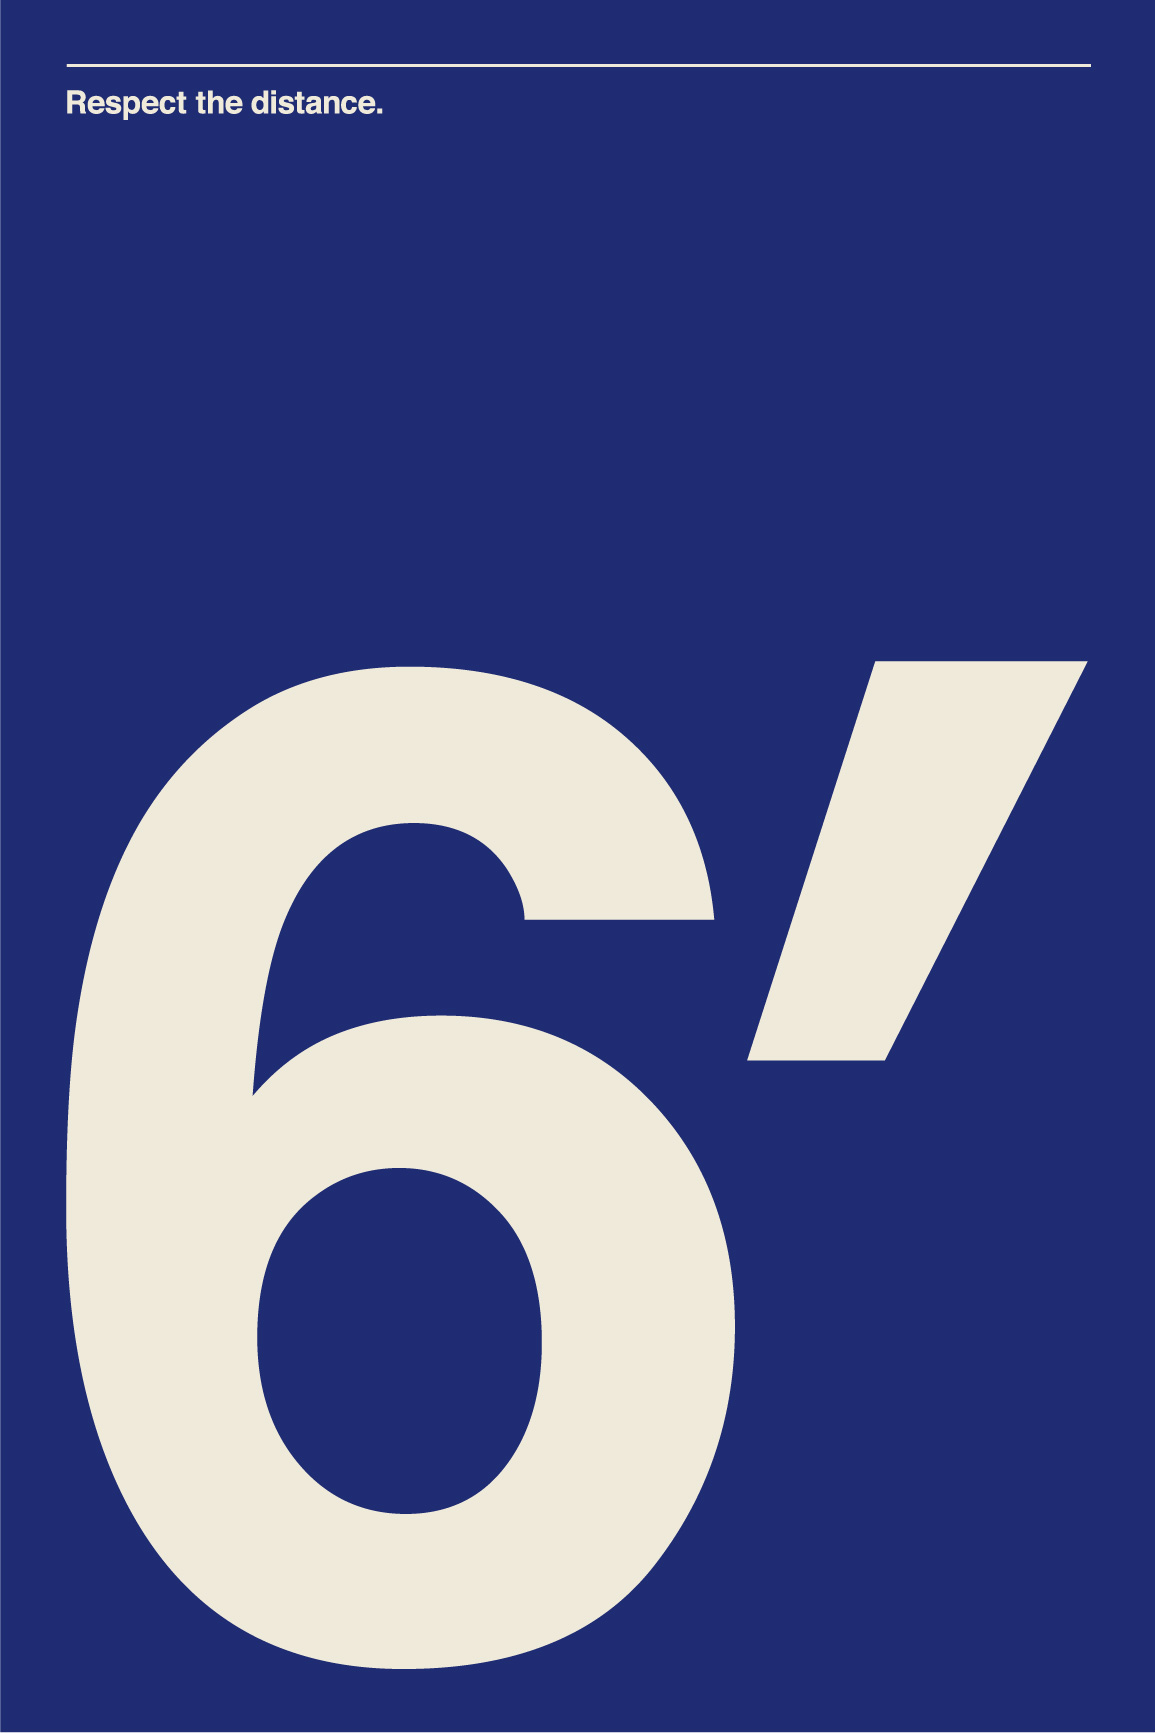 6'